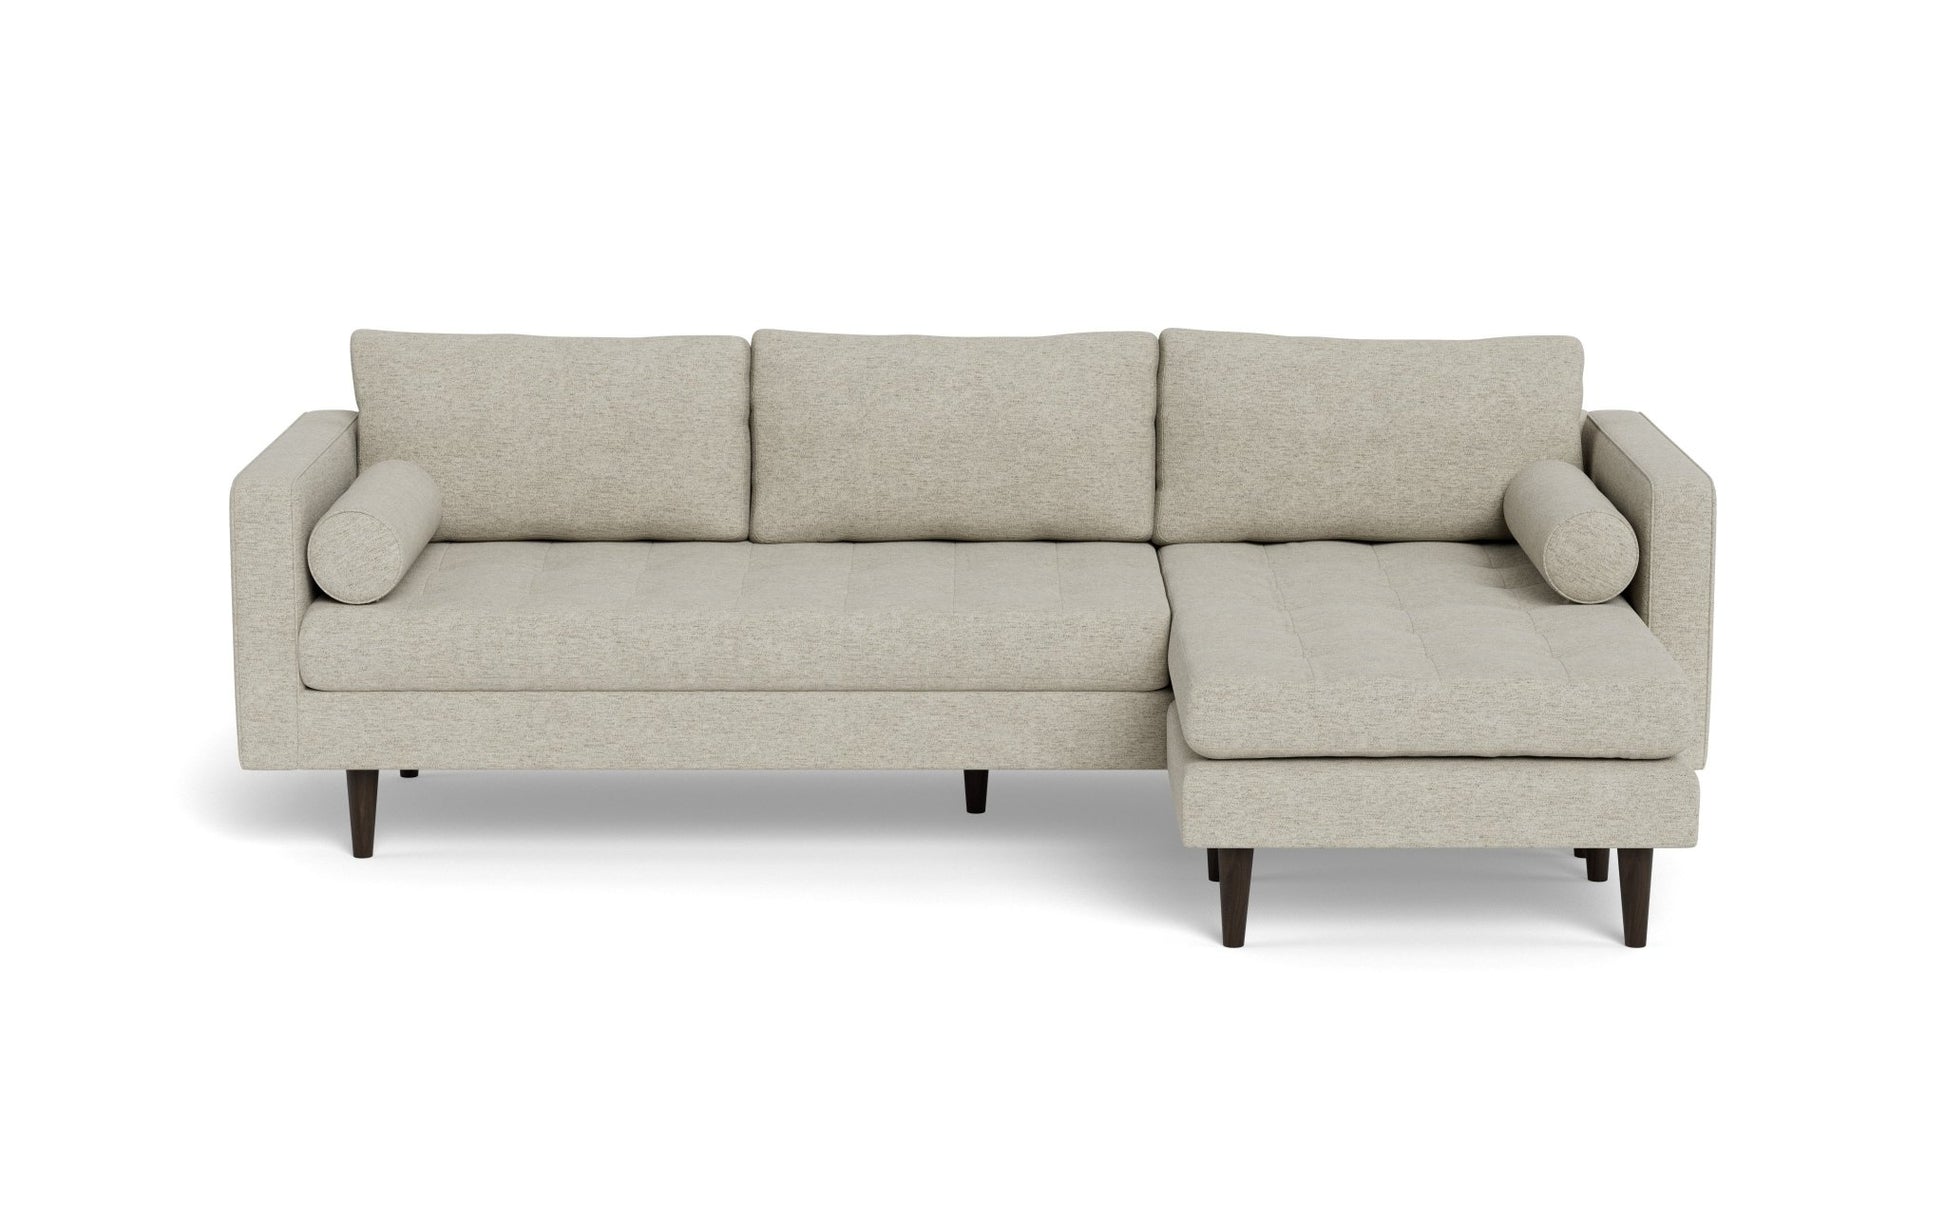 Ladybird Reversible Chaise Sofa - Merit Dove